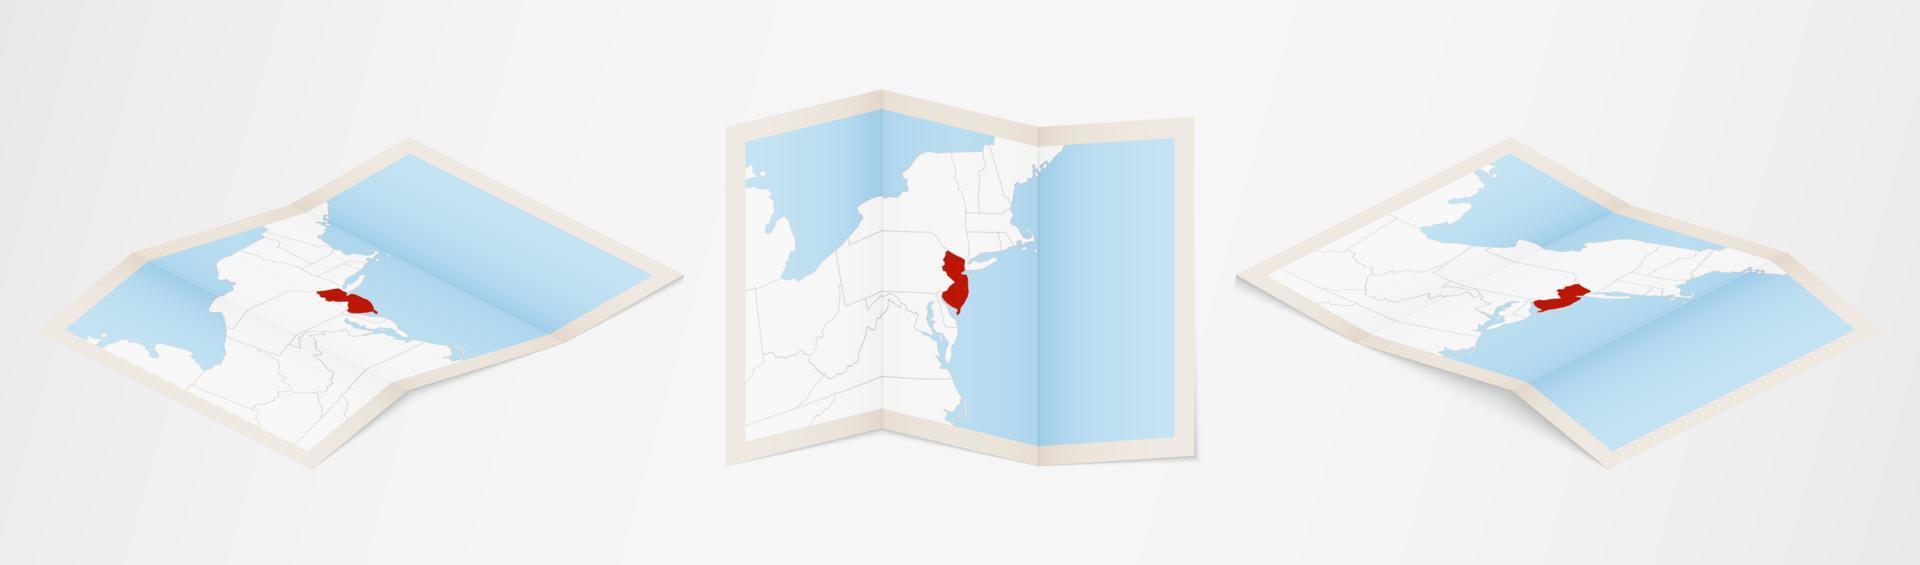 gevouwen kaart van nieuw Jersey in drie verschillend versies. vector